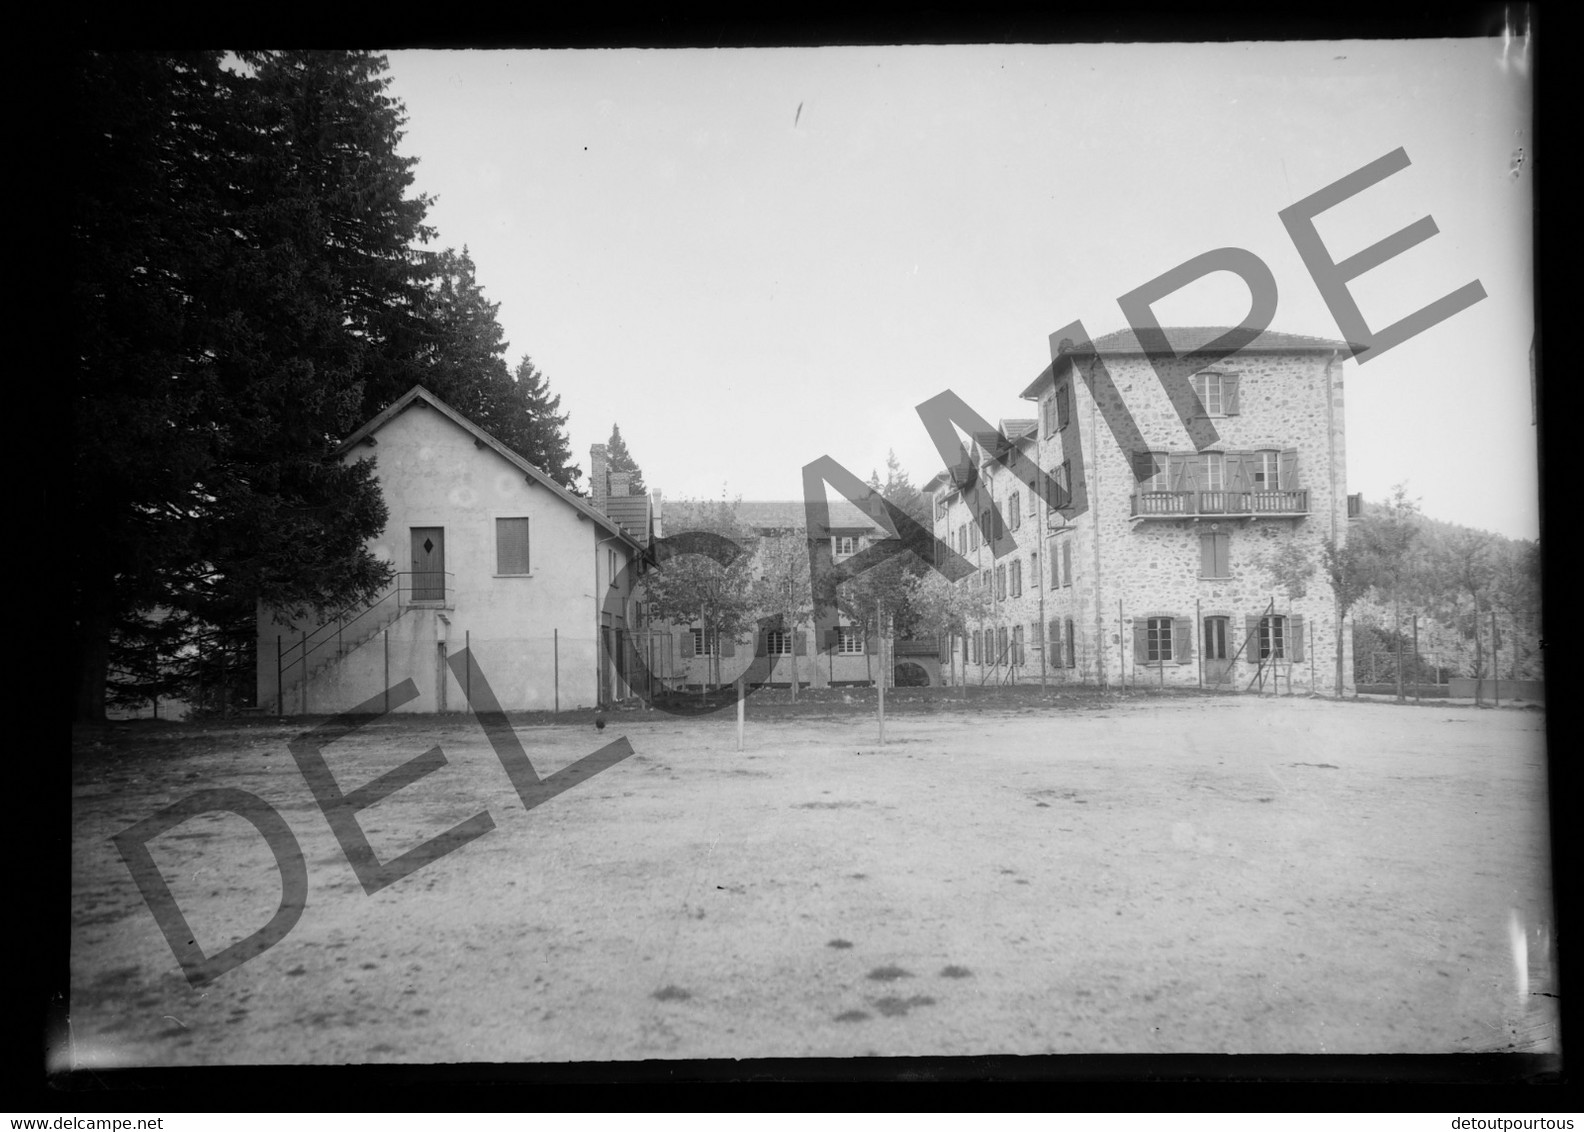 12 photographies négatif verre 13x18cm  LALOUVESC Ardèche manoir SAINT AUGUSTIN colonie ORAN villa Mélèzes curés